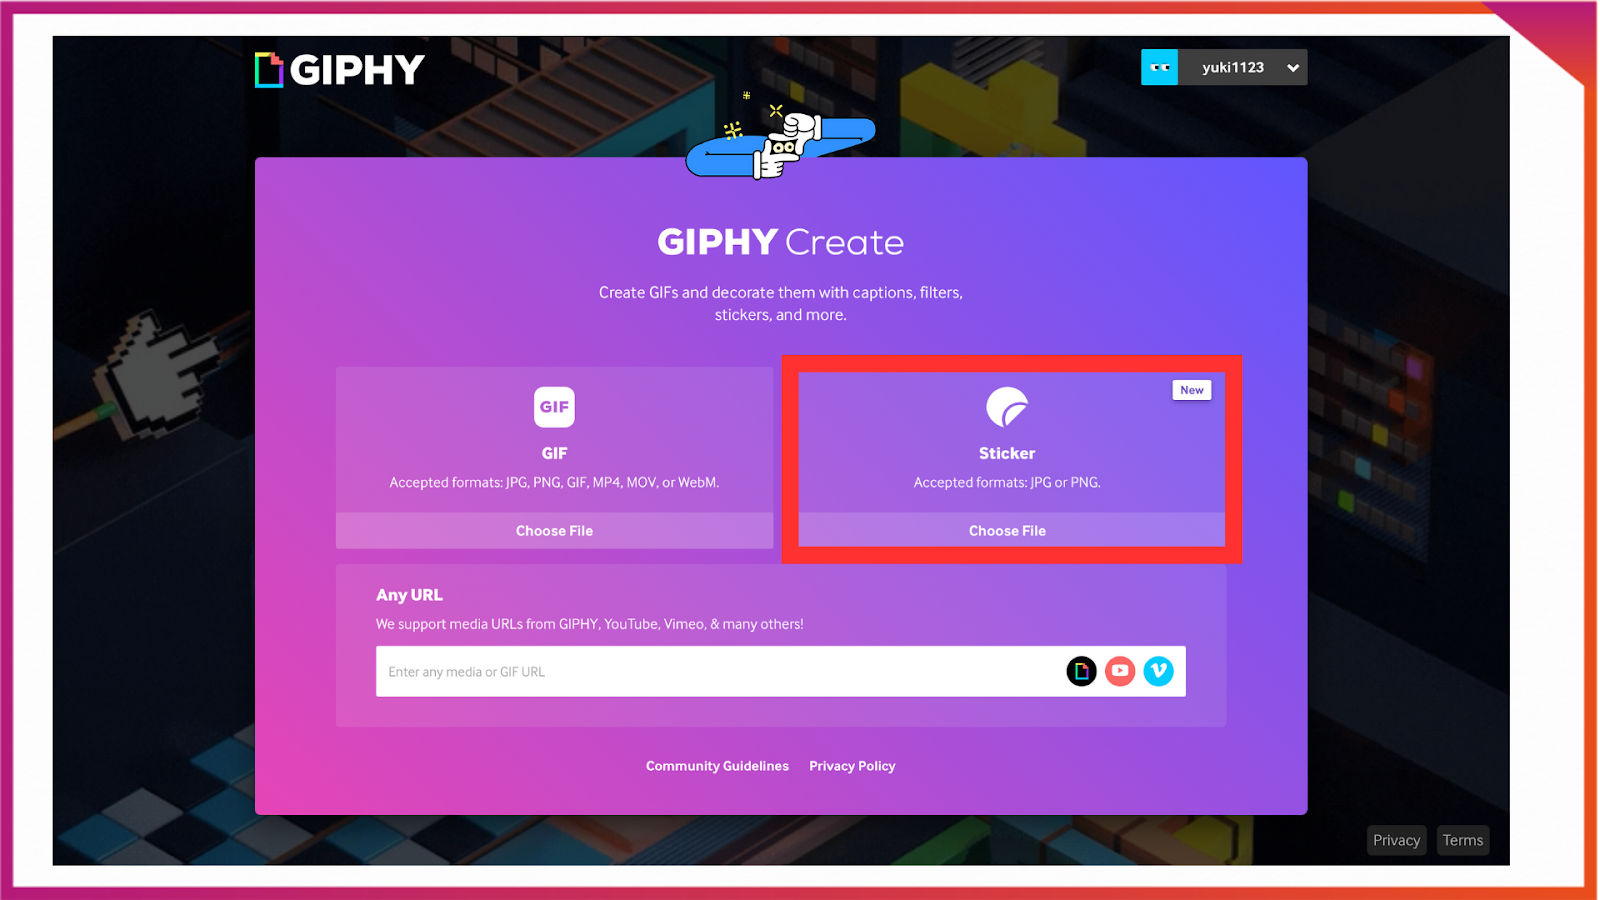 インスタで使用するオリジナルGIFスタンプをGIFTYで作る方法。「Sticker」を選択し、GIFにしたい画像を選ぶ。